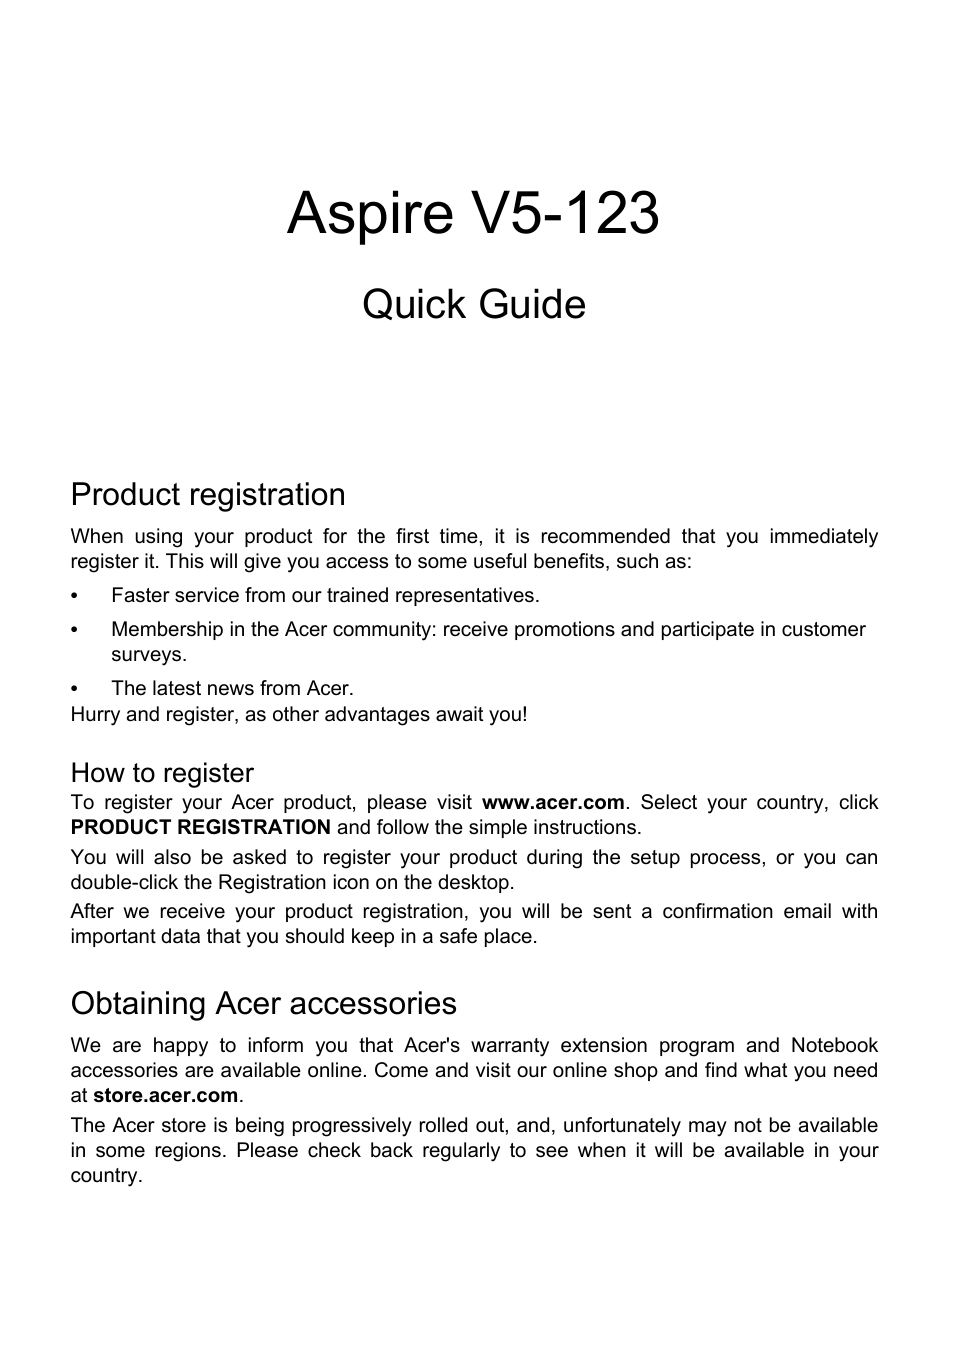 Acer Aspire V5-123 User Manual | 9 pages